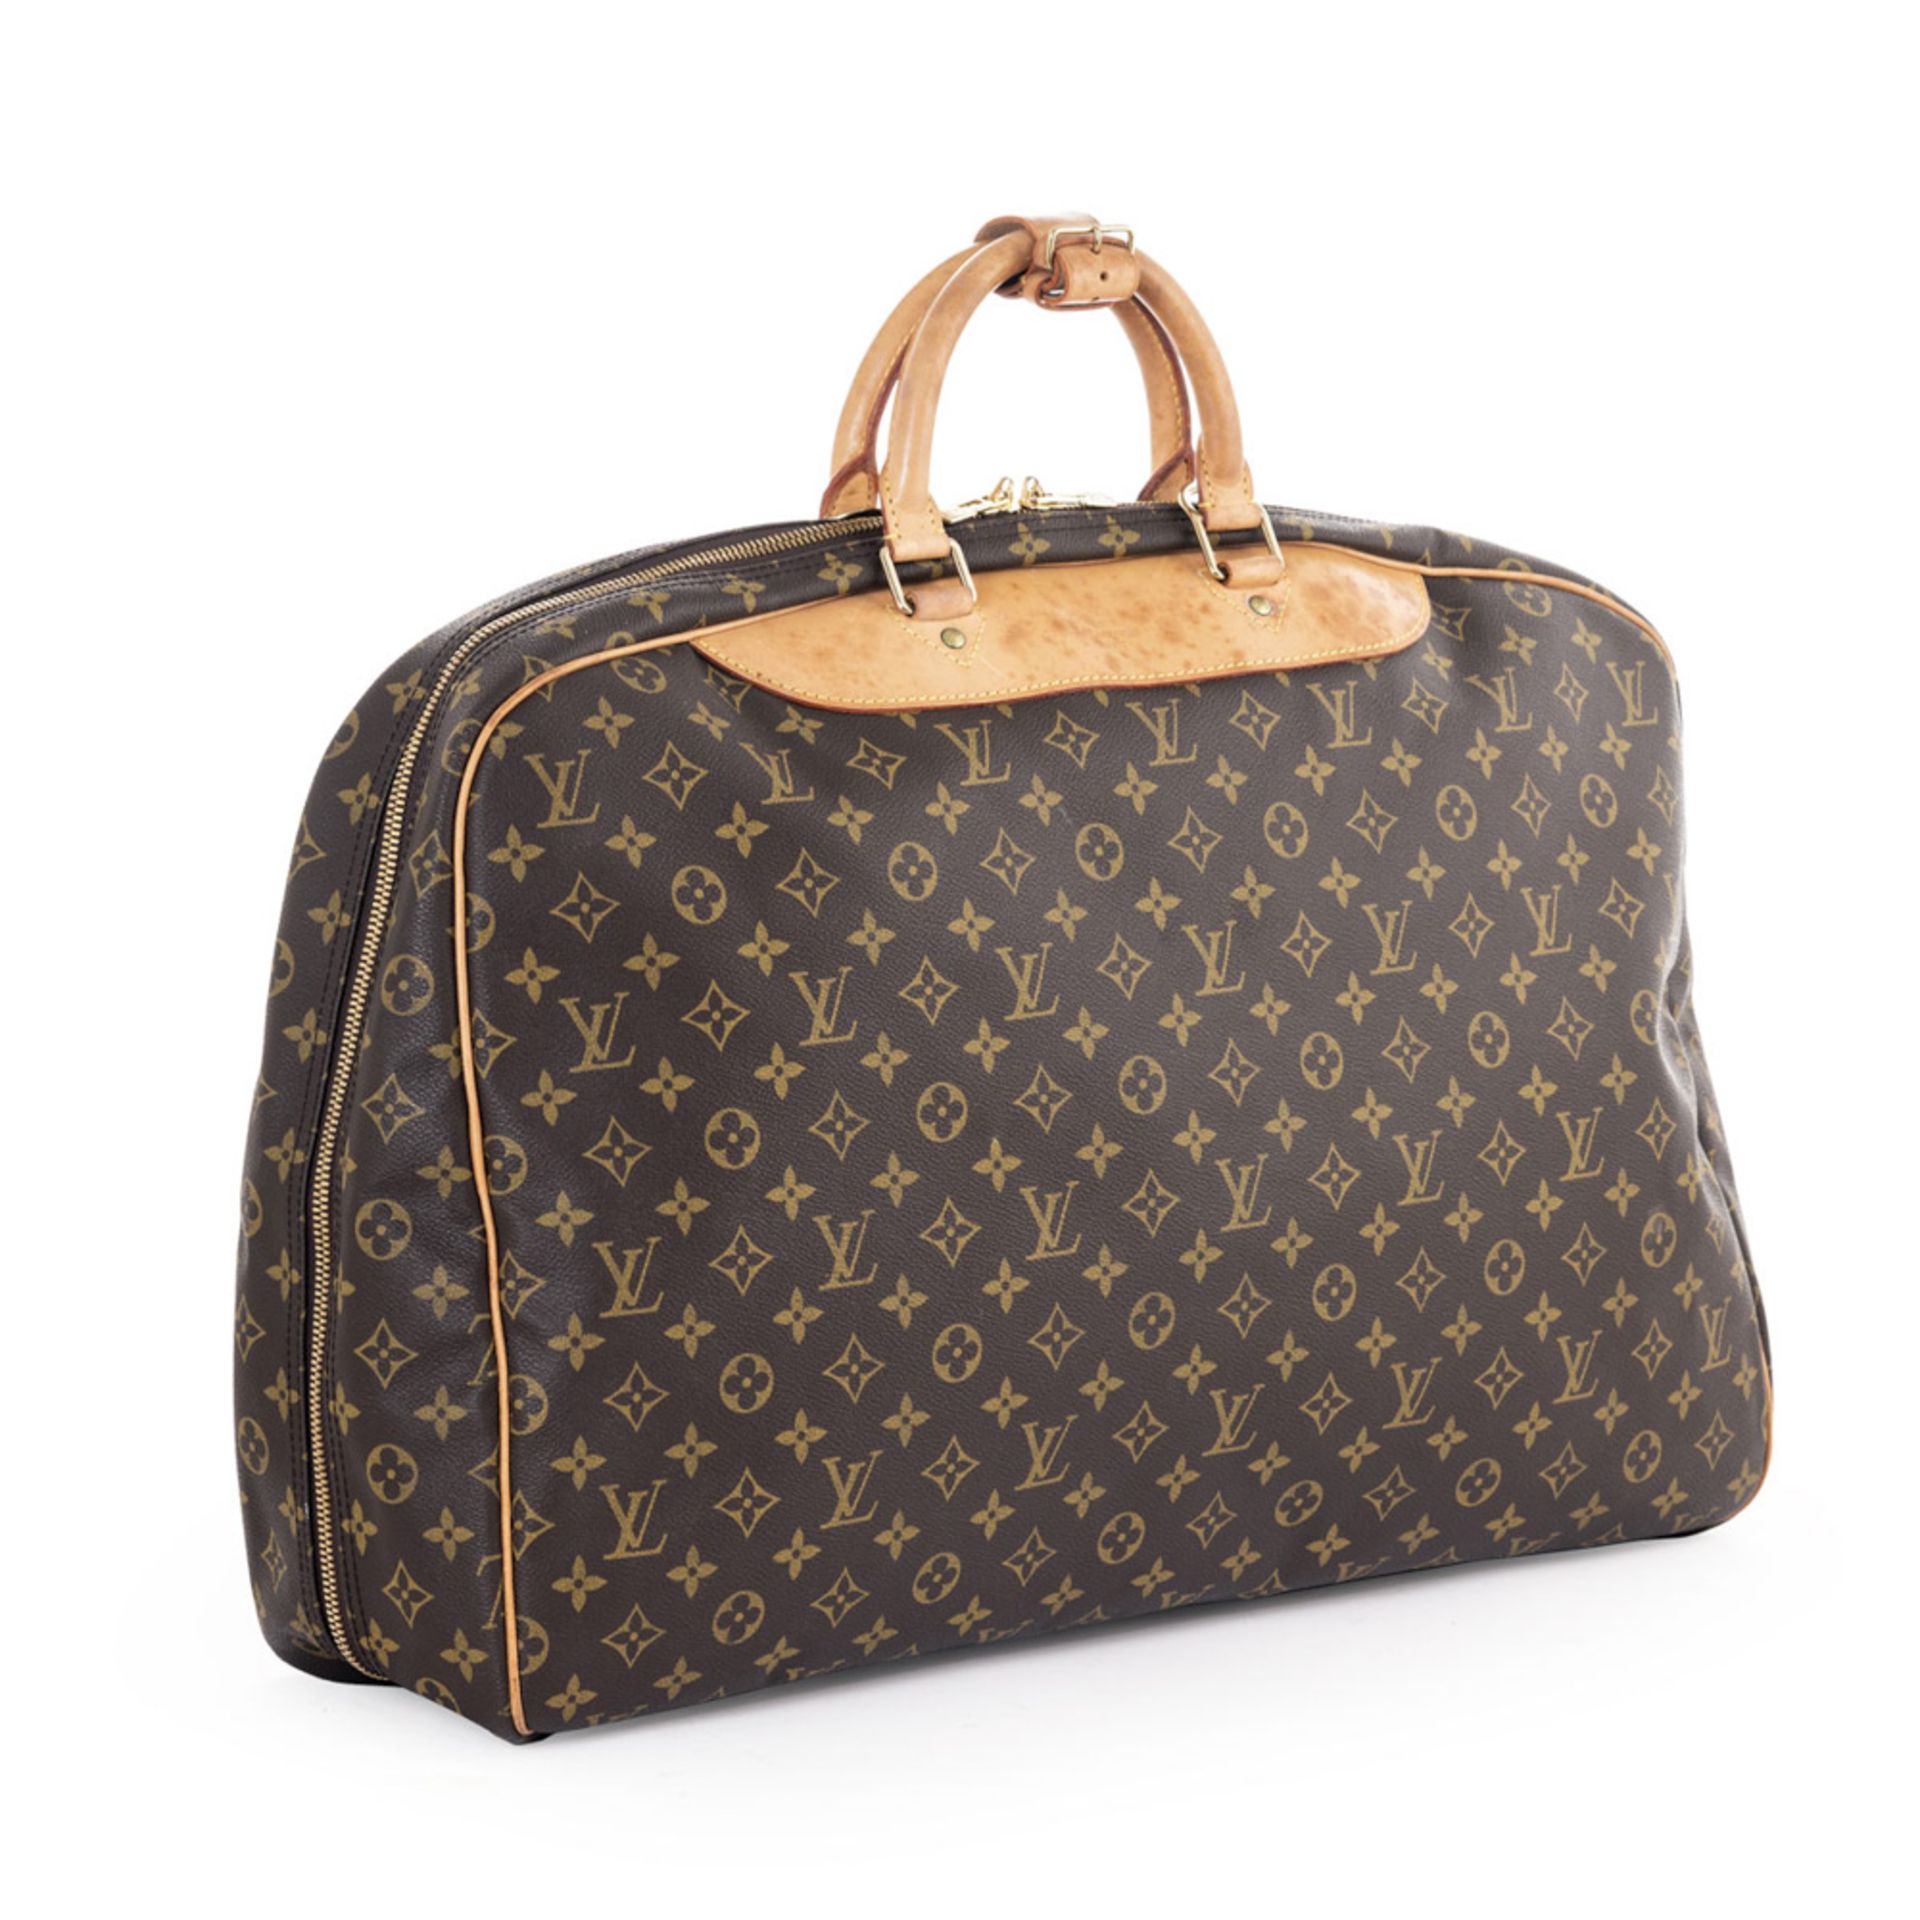 Louis Vuitton, Alize collection vintage suitcase